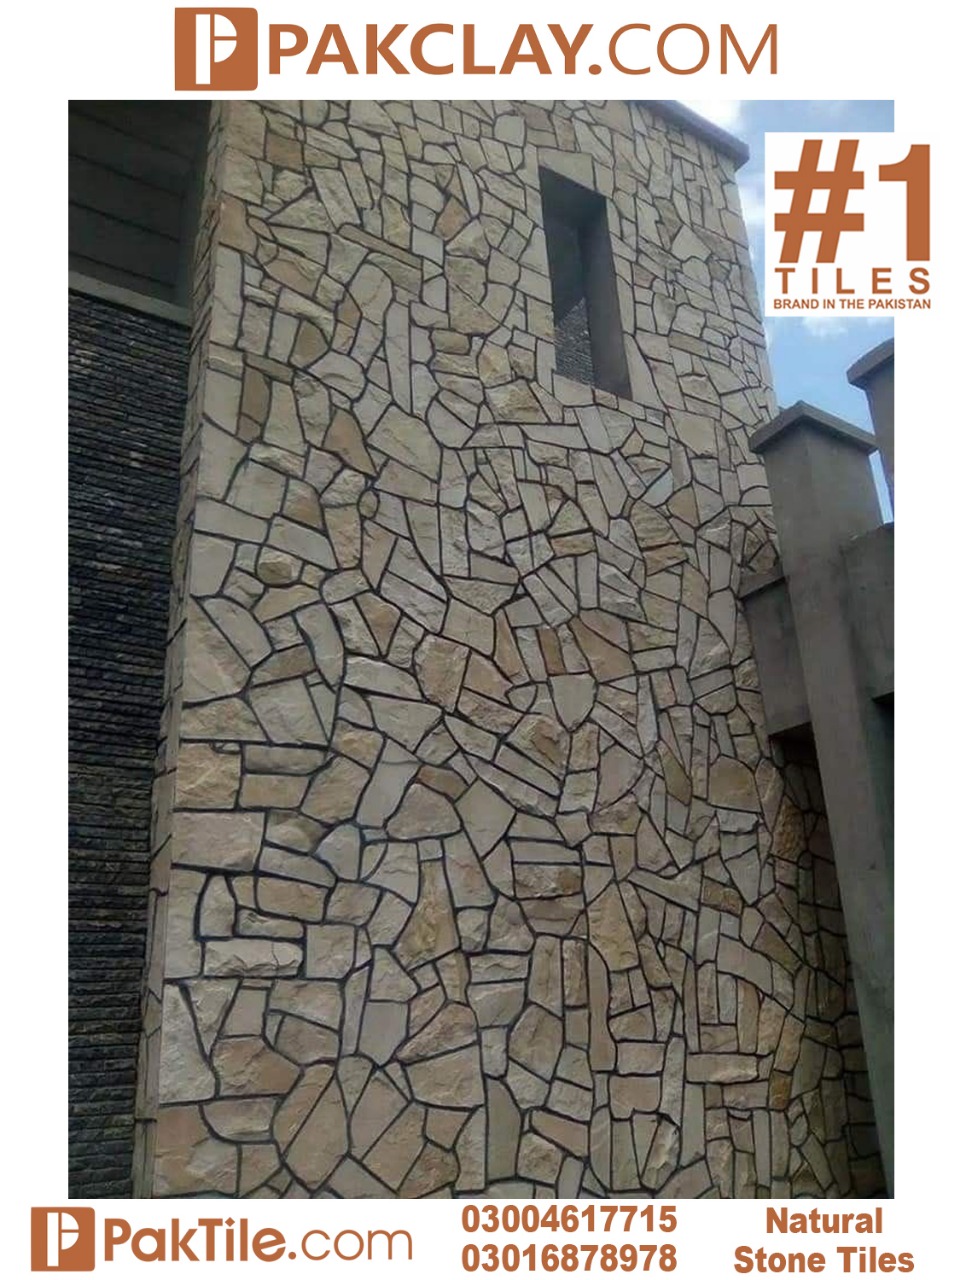 Best stone tiles in Pakistan